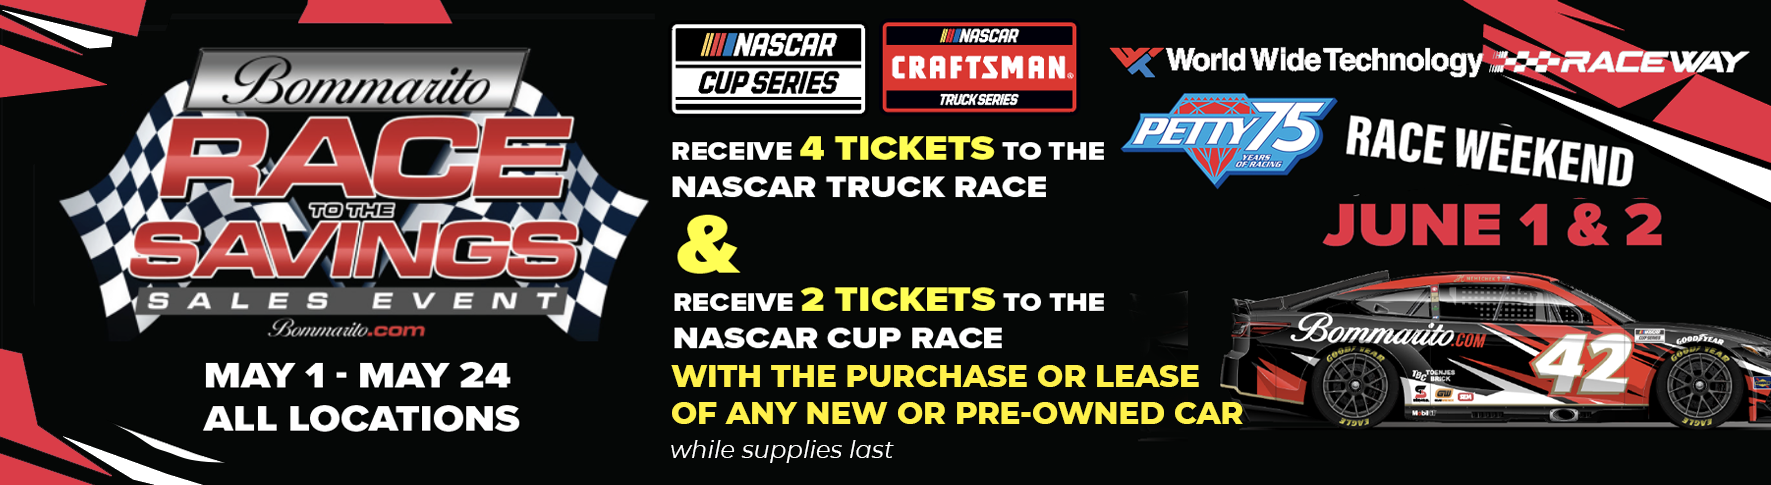 NASCAR RACE TICKETS